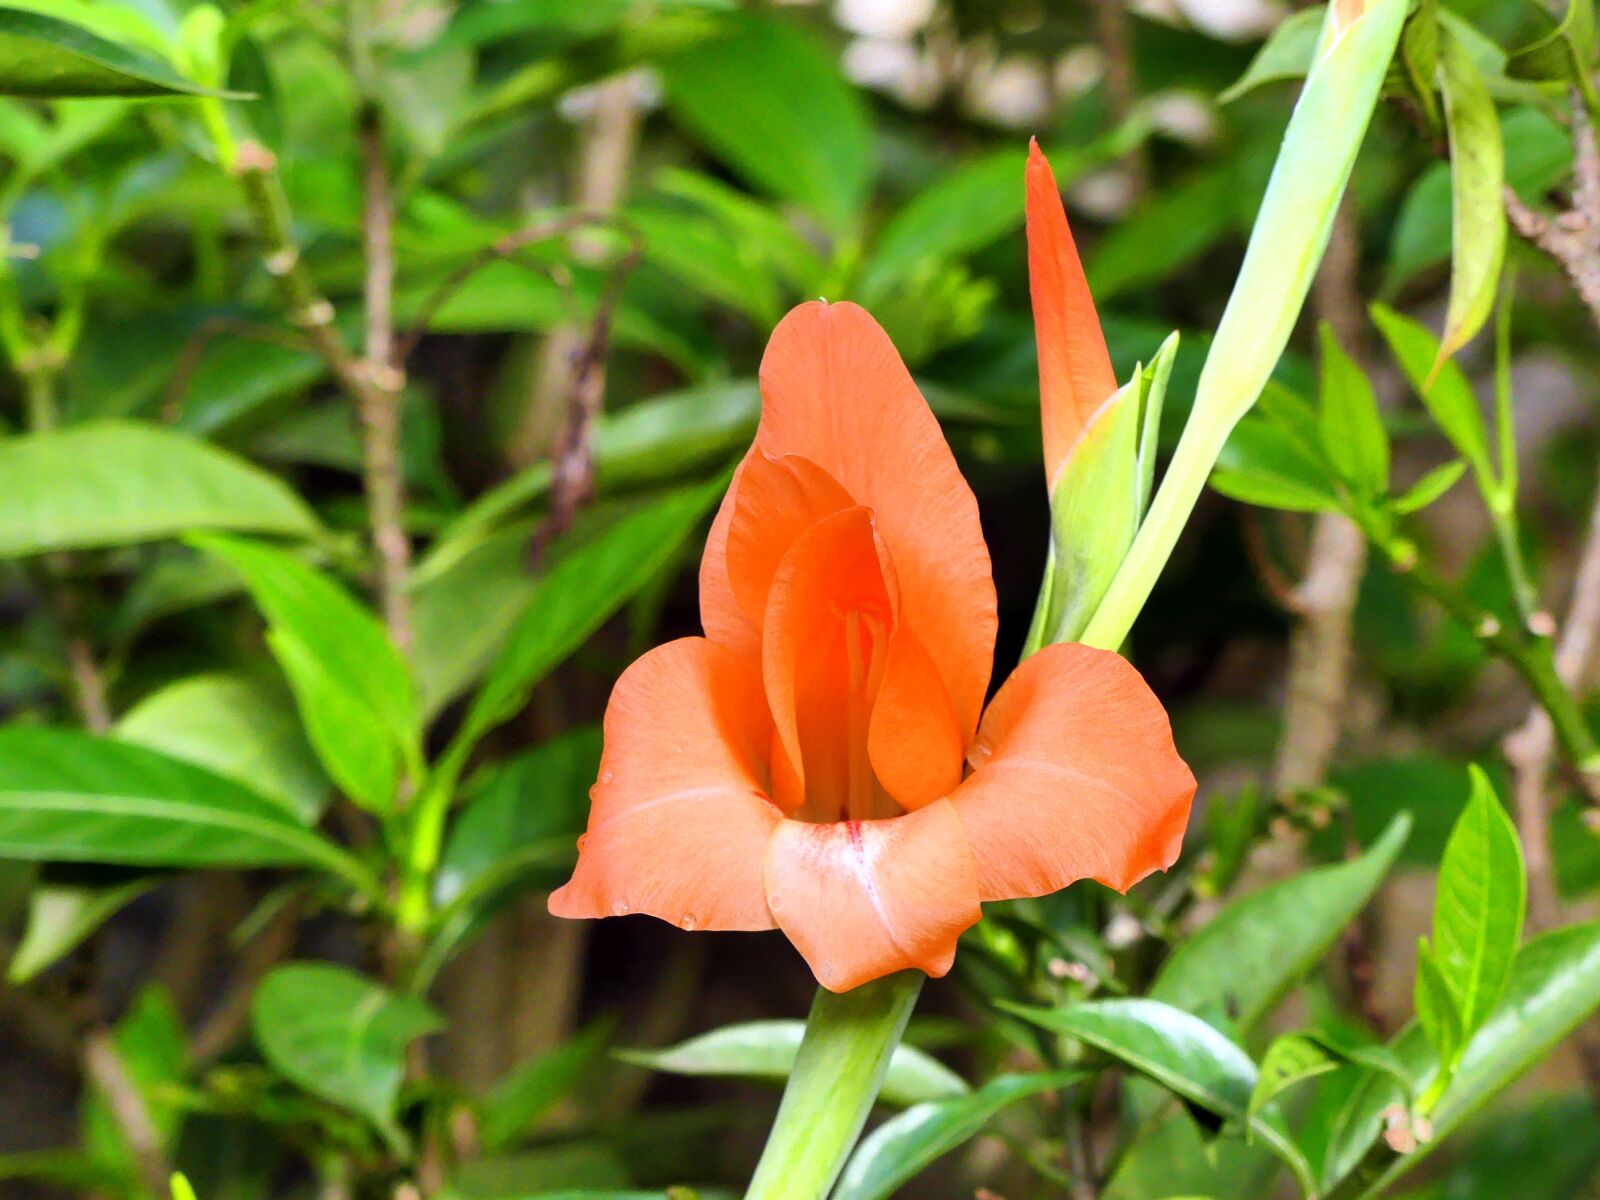 Panasonic Lumix DMC-FZ300 sample photo. Gladiola, flower, orange photography